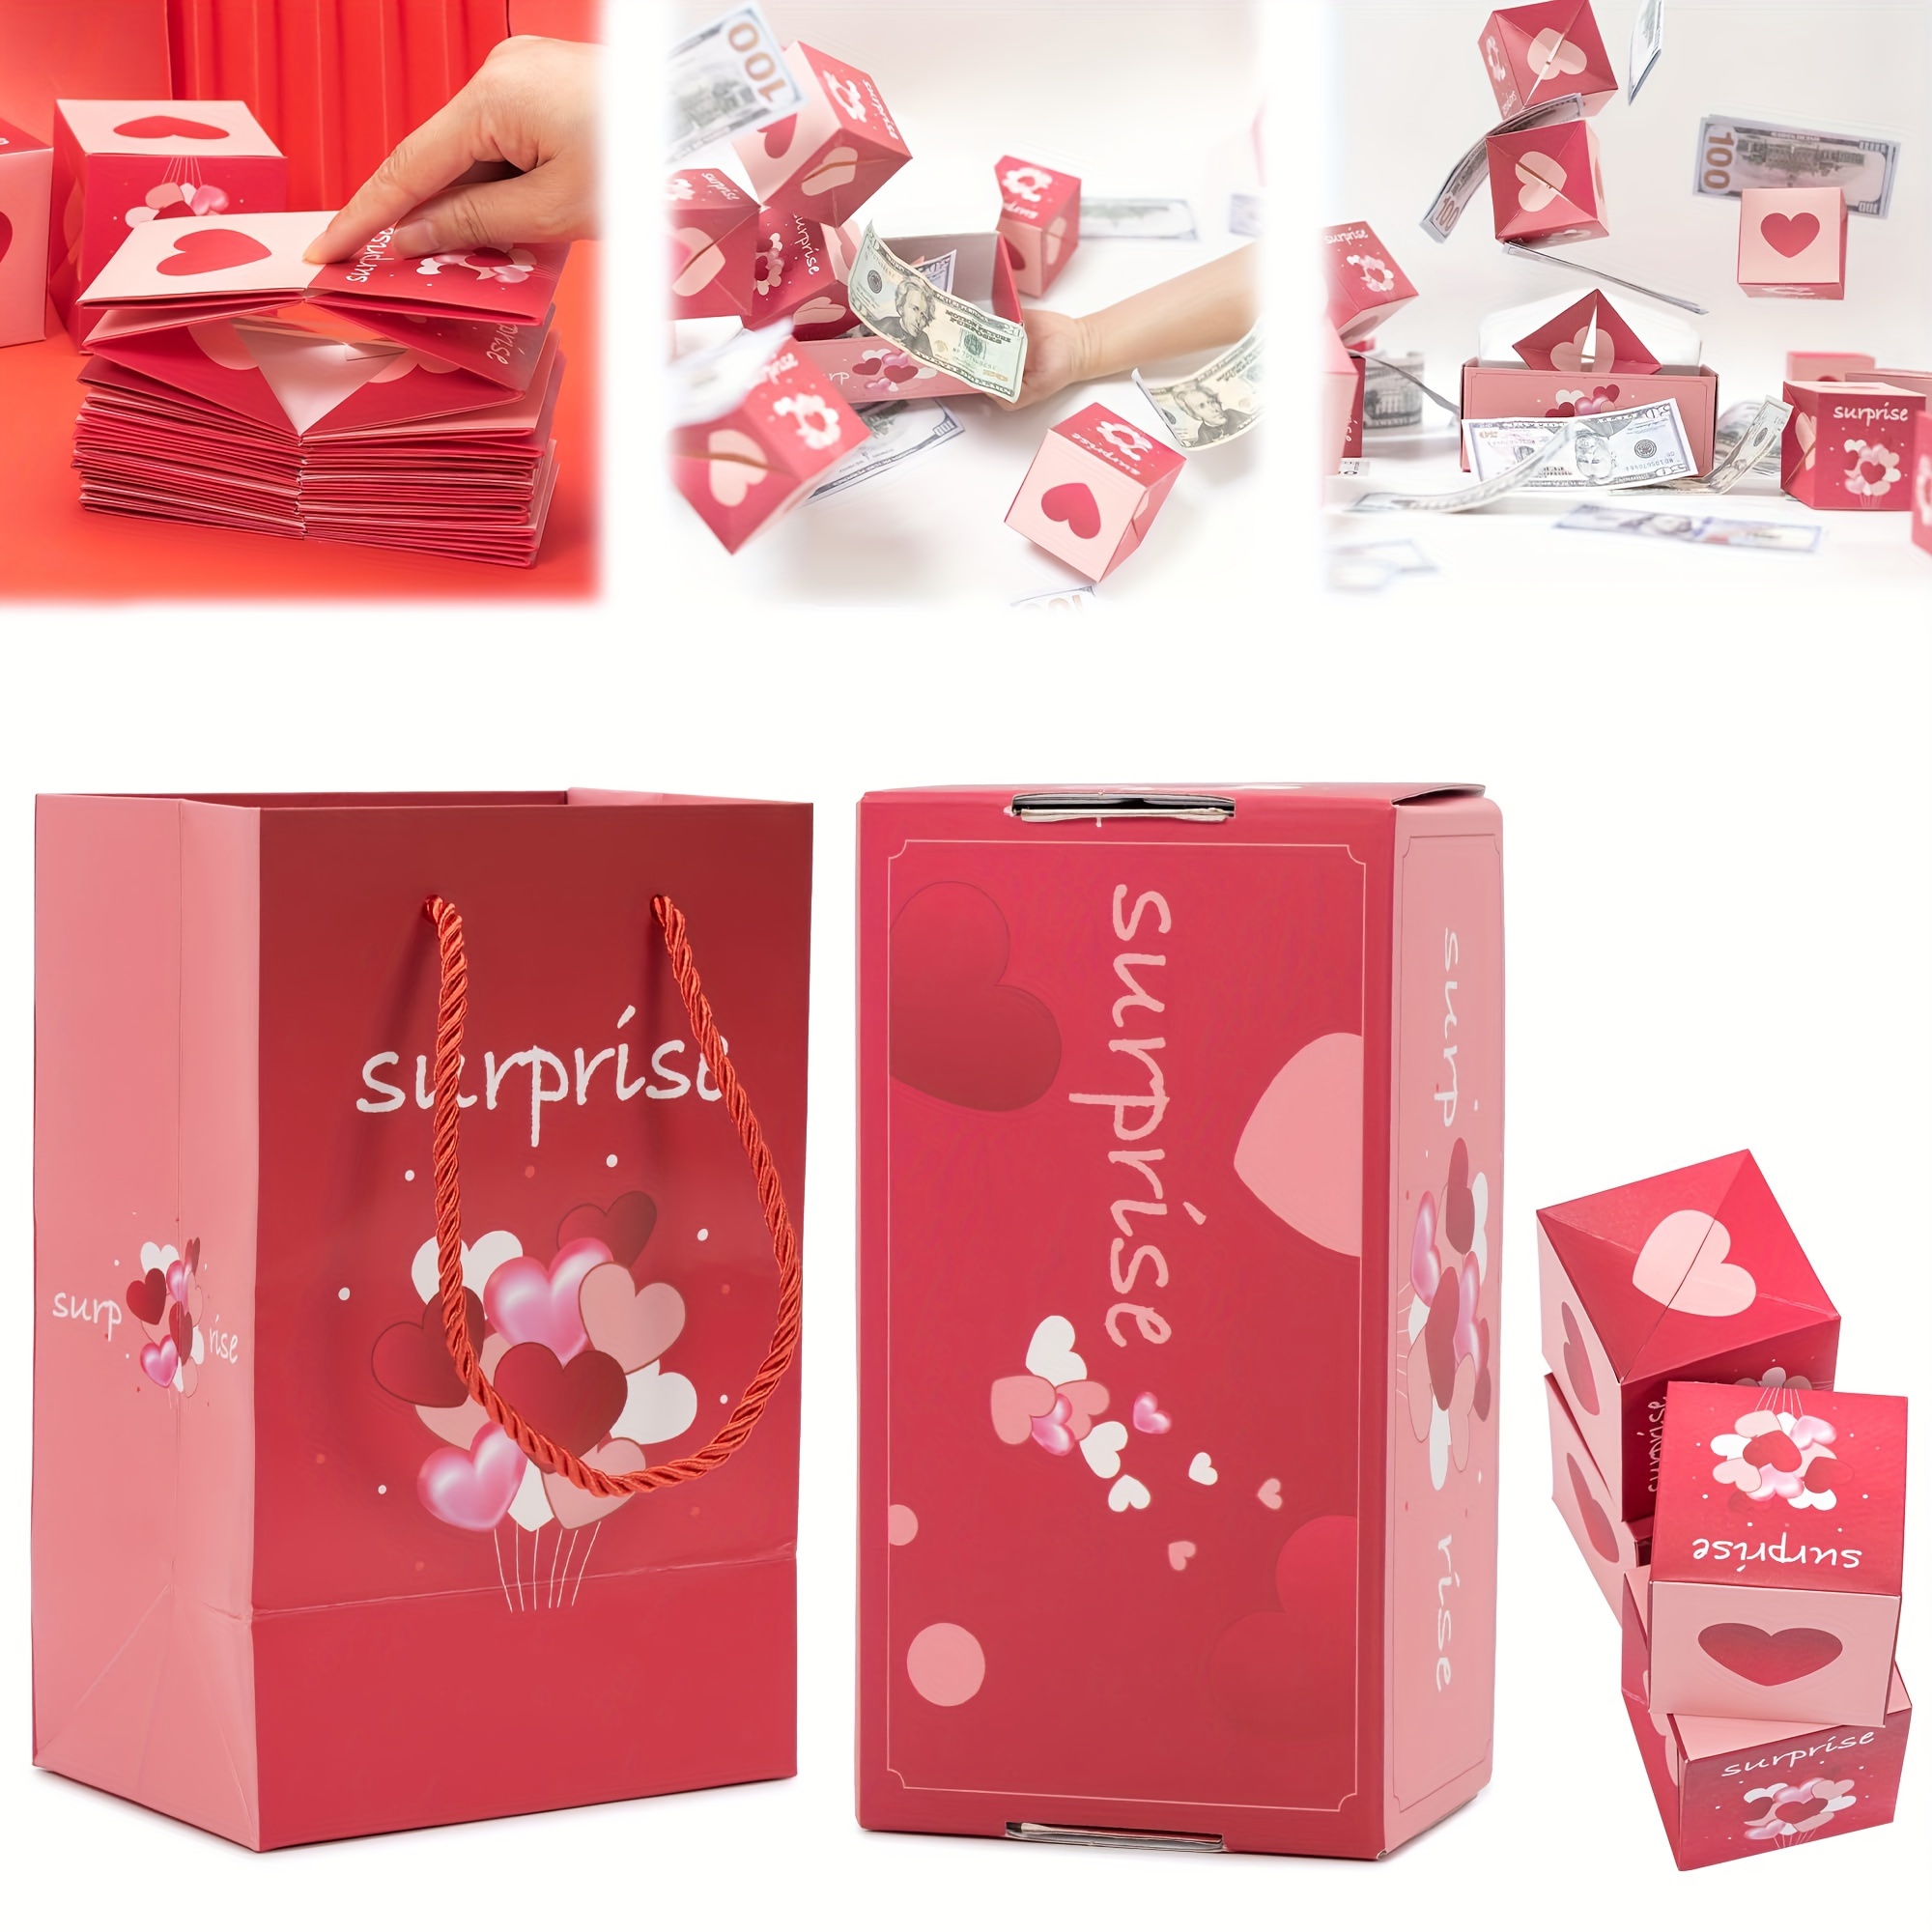 Caja de regalo sorpresa – Creando el regalo más sorprendente, caja de  regalo sorpresa plegable, cajas creativas sorpresa explosivas, cajas vacías  para